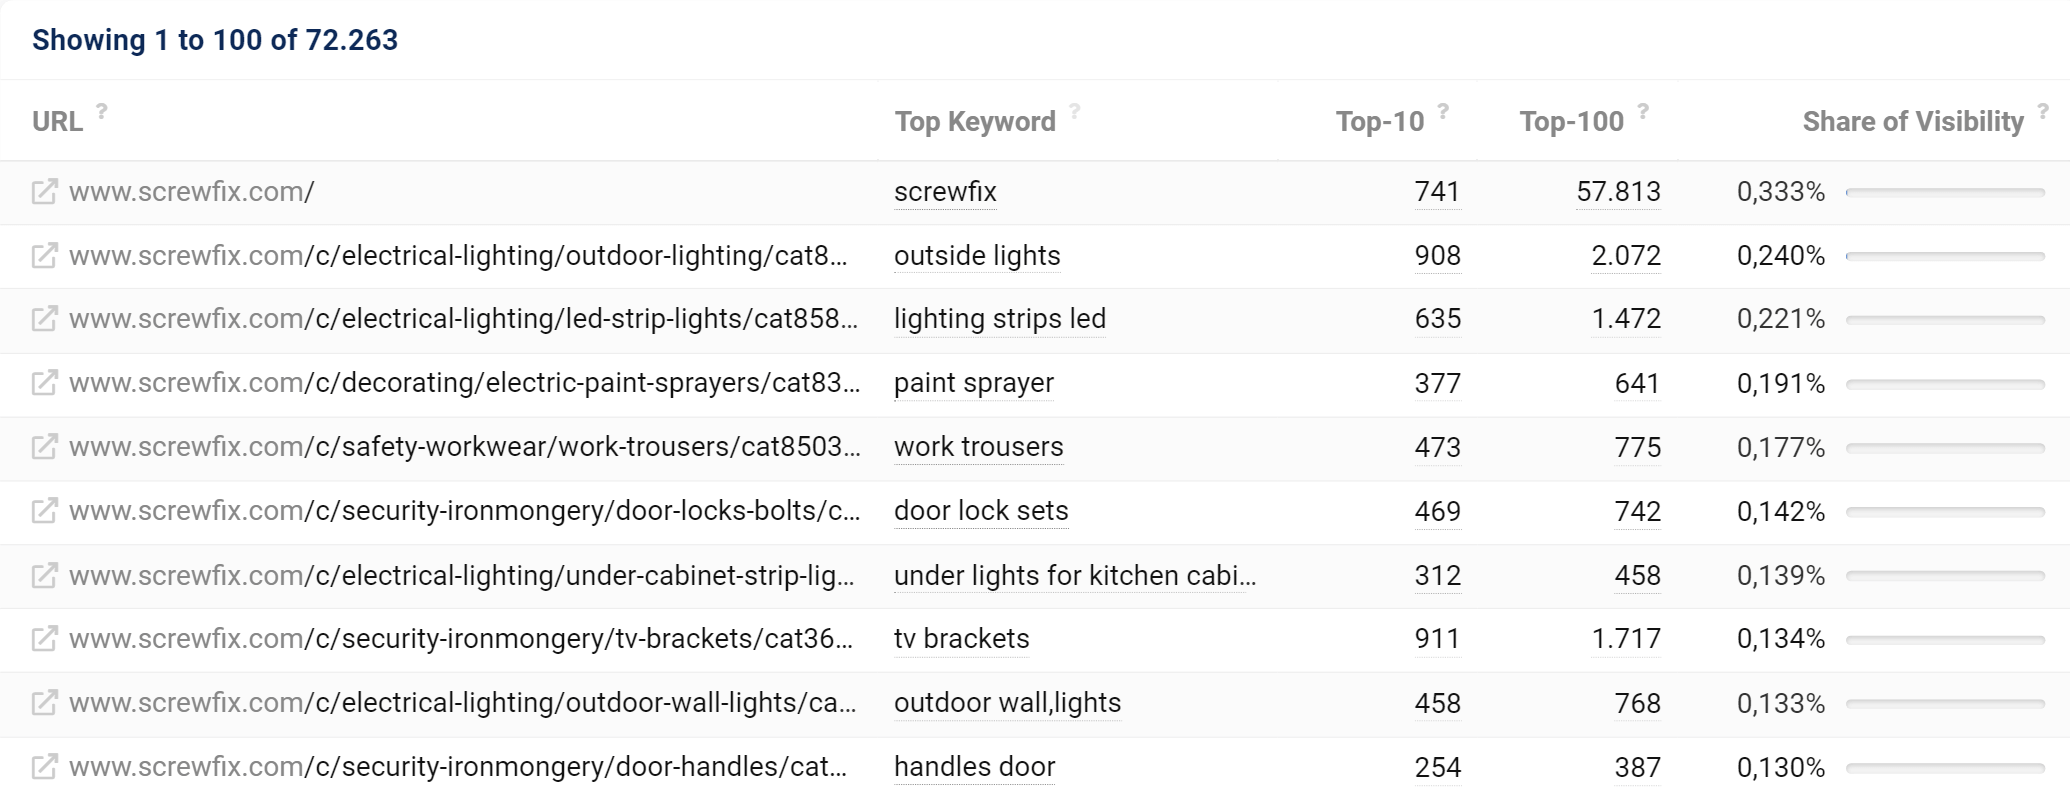 Most successful URLs of screwfix.com